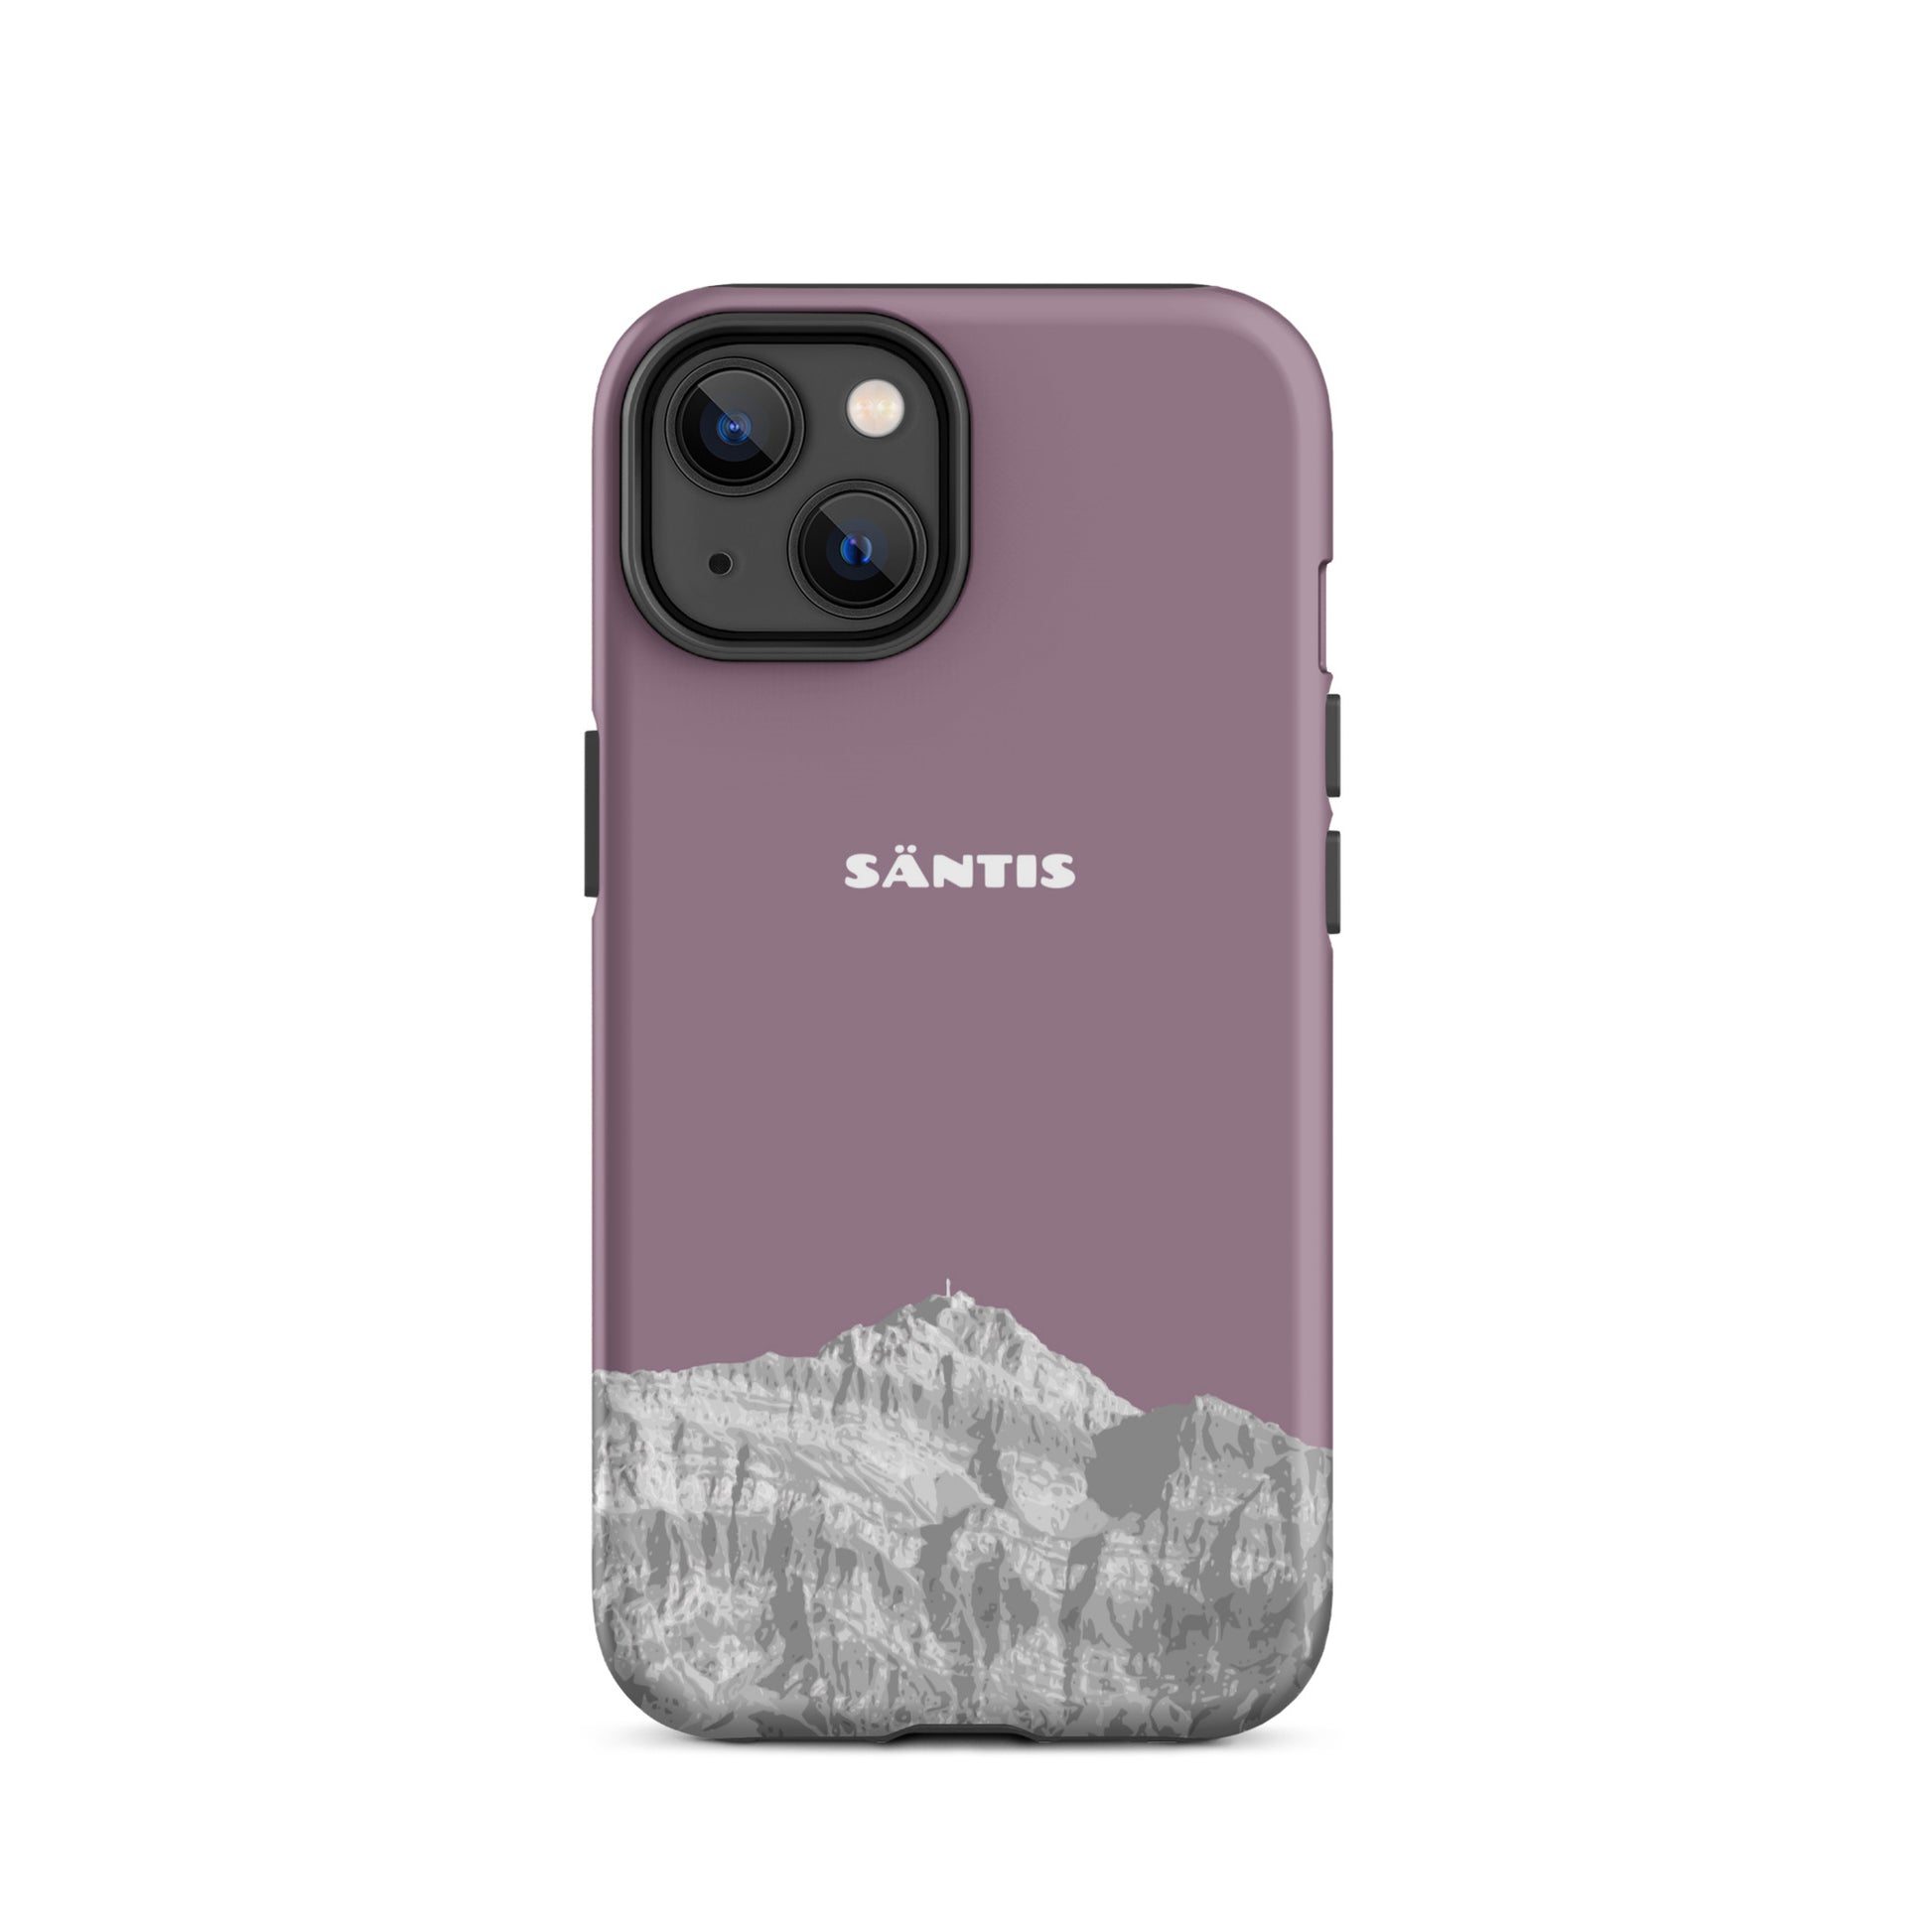 Hülle für das iPhone 14 von Apple in der Farbe Pastellviolett, dass den Säntis im Alpstein zeigt.